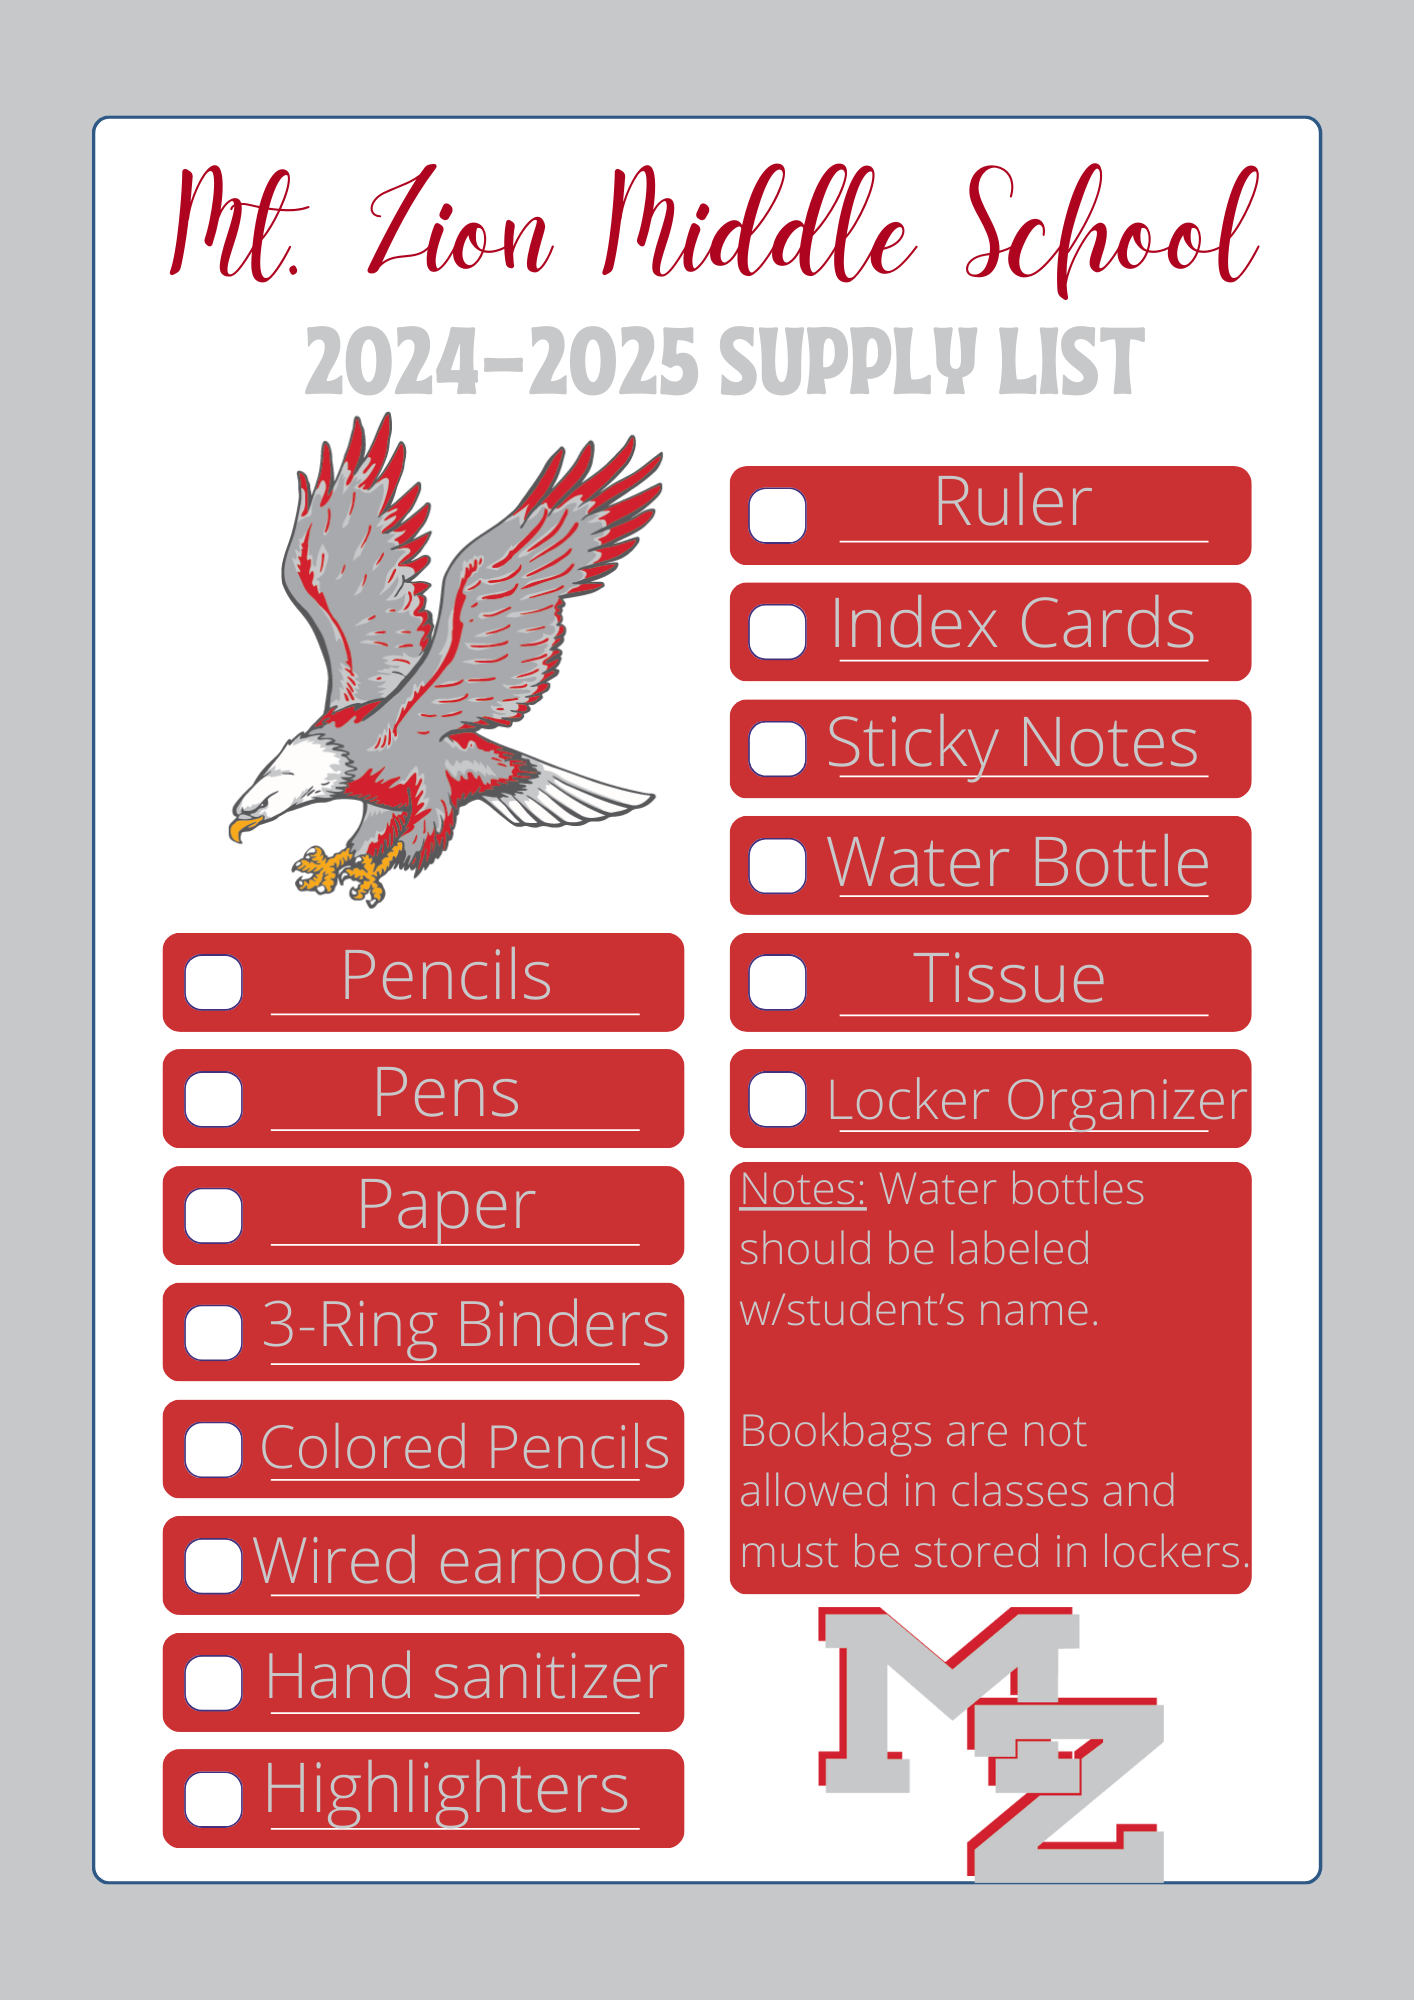 2024-2025 Supply List